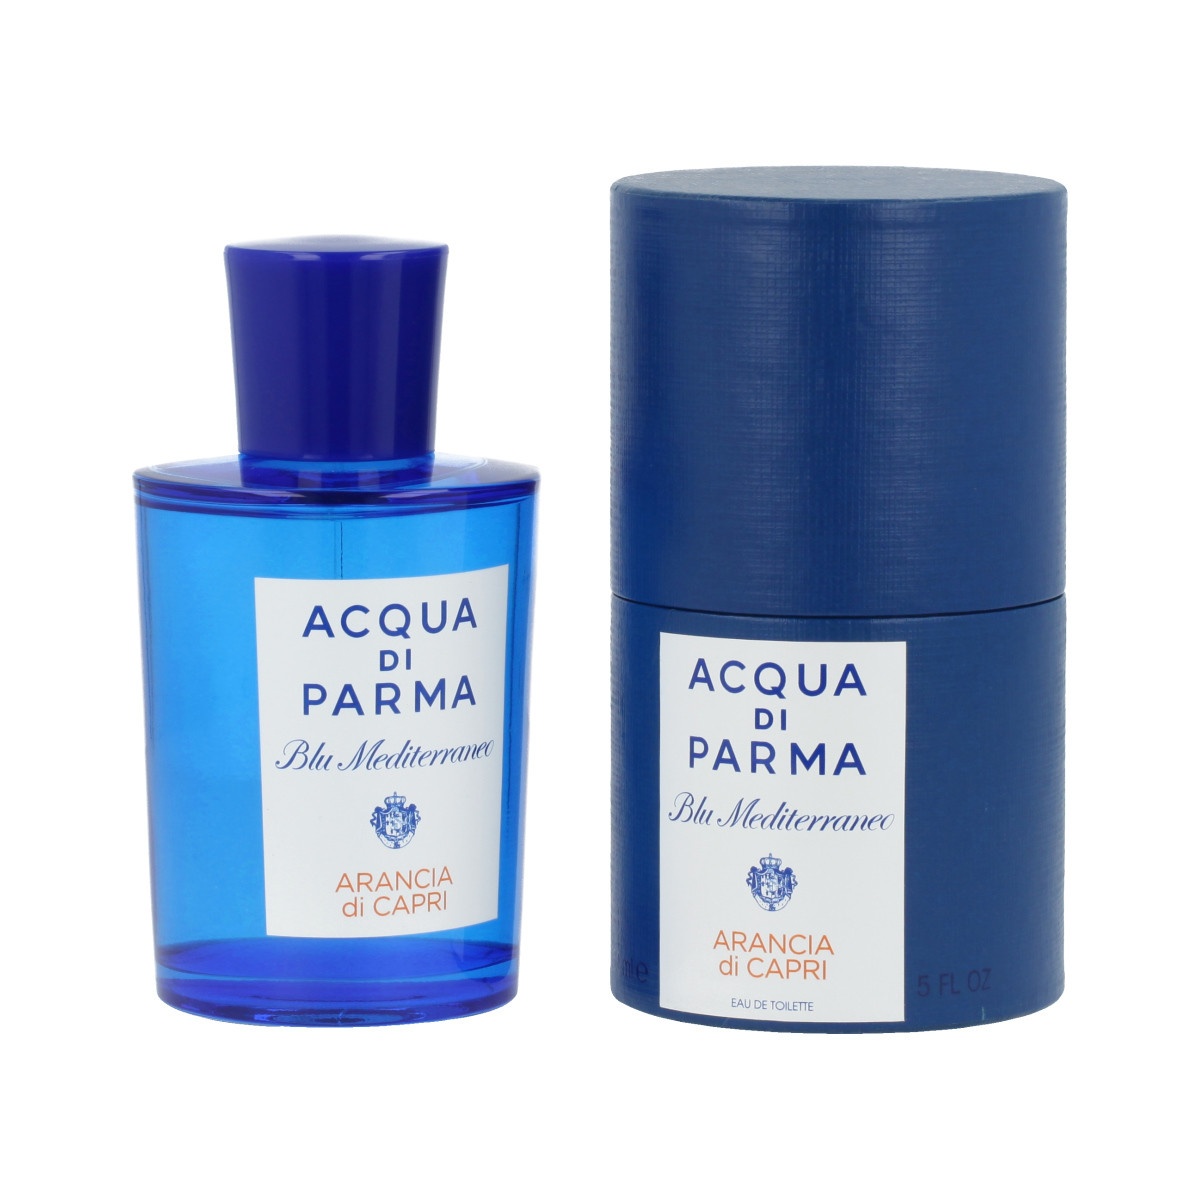 Acqua di Parma Blu Mediterraneo Arancia di Capri - Eau de Toilette 150 ml